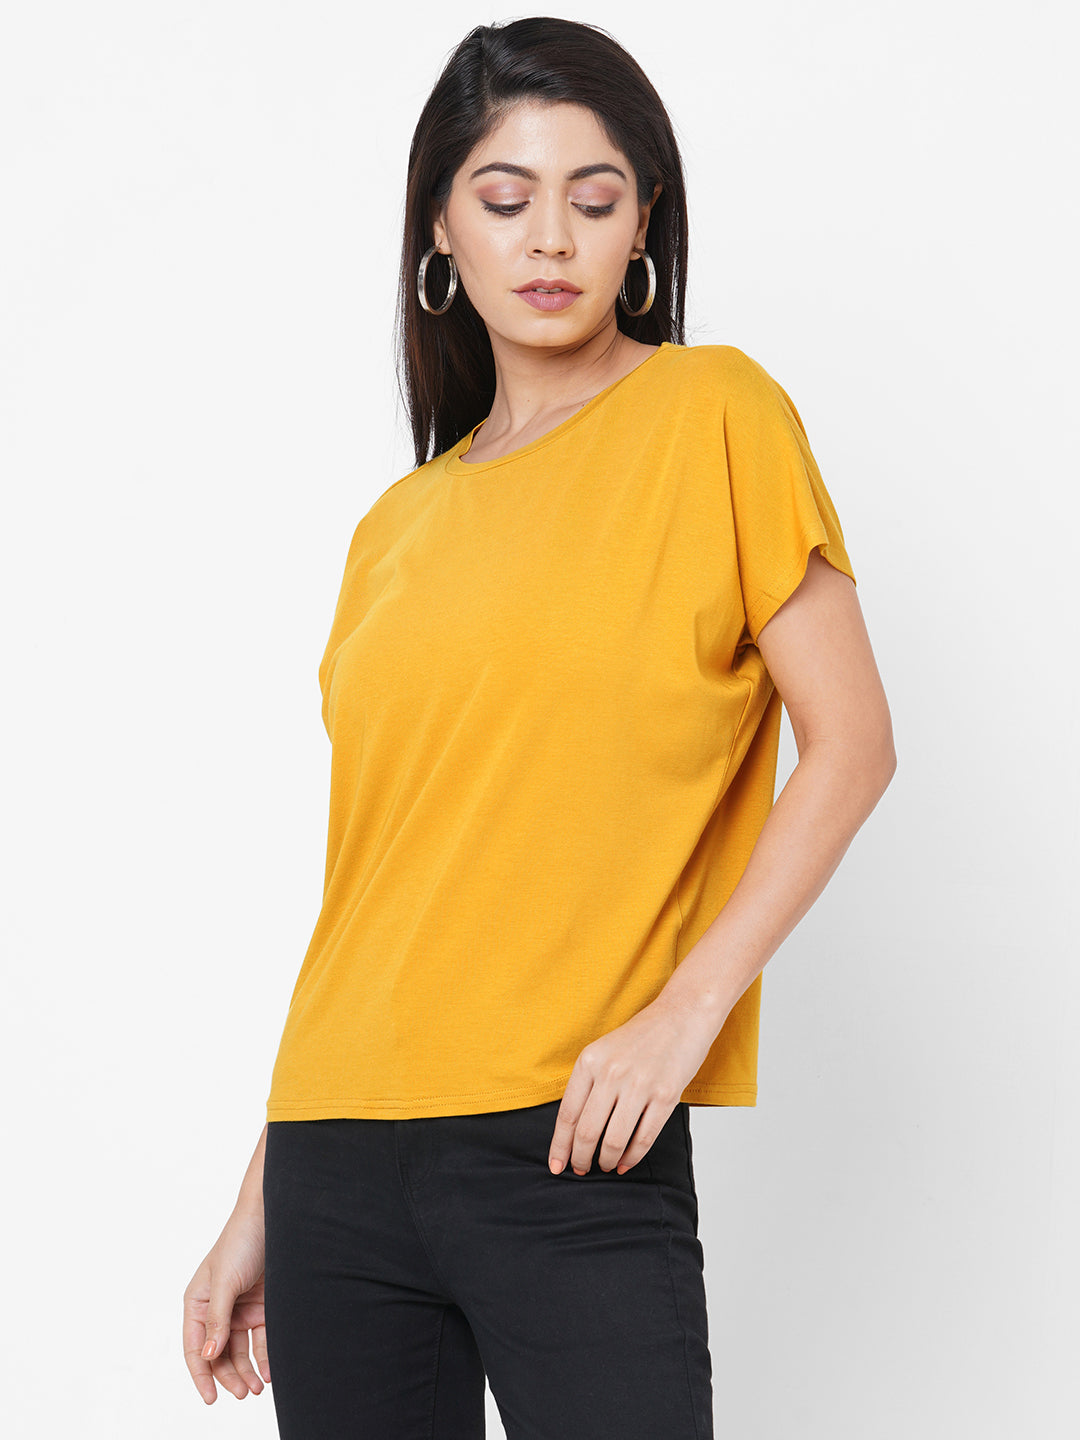 Womens Yellow Bamboo Cotton Elastane Regular Fit Tshirt